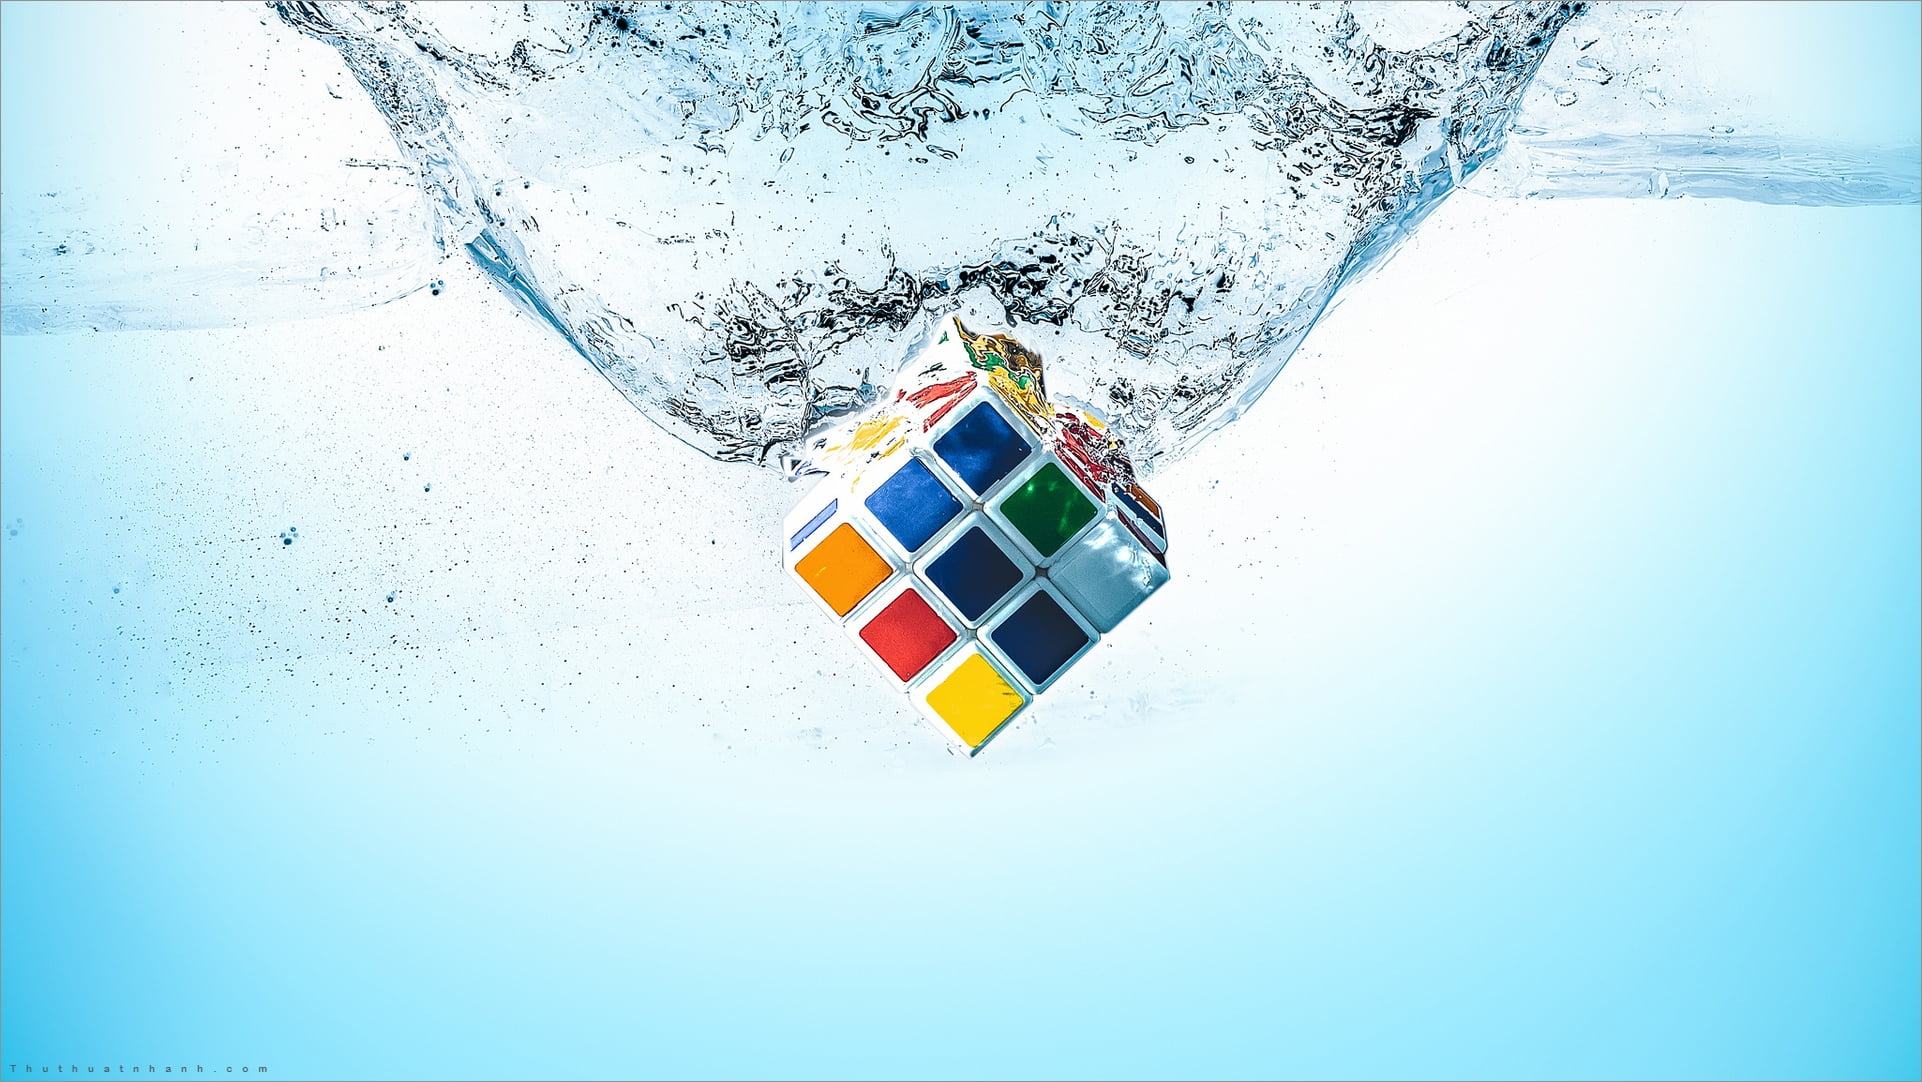 Trang trí màn hình của bạn với hình nền Rubik độc đáo và đầy màu sắc. Mỗi mẫu thiết kế đều có thông điệp riêng, lôi cuốn sự chú ý của người xem.